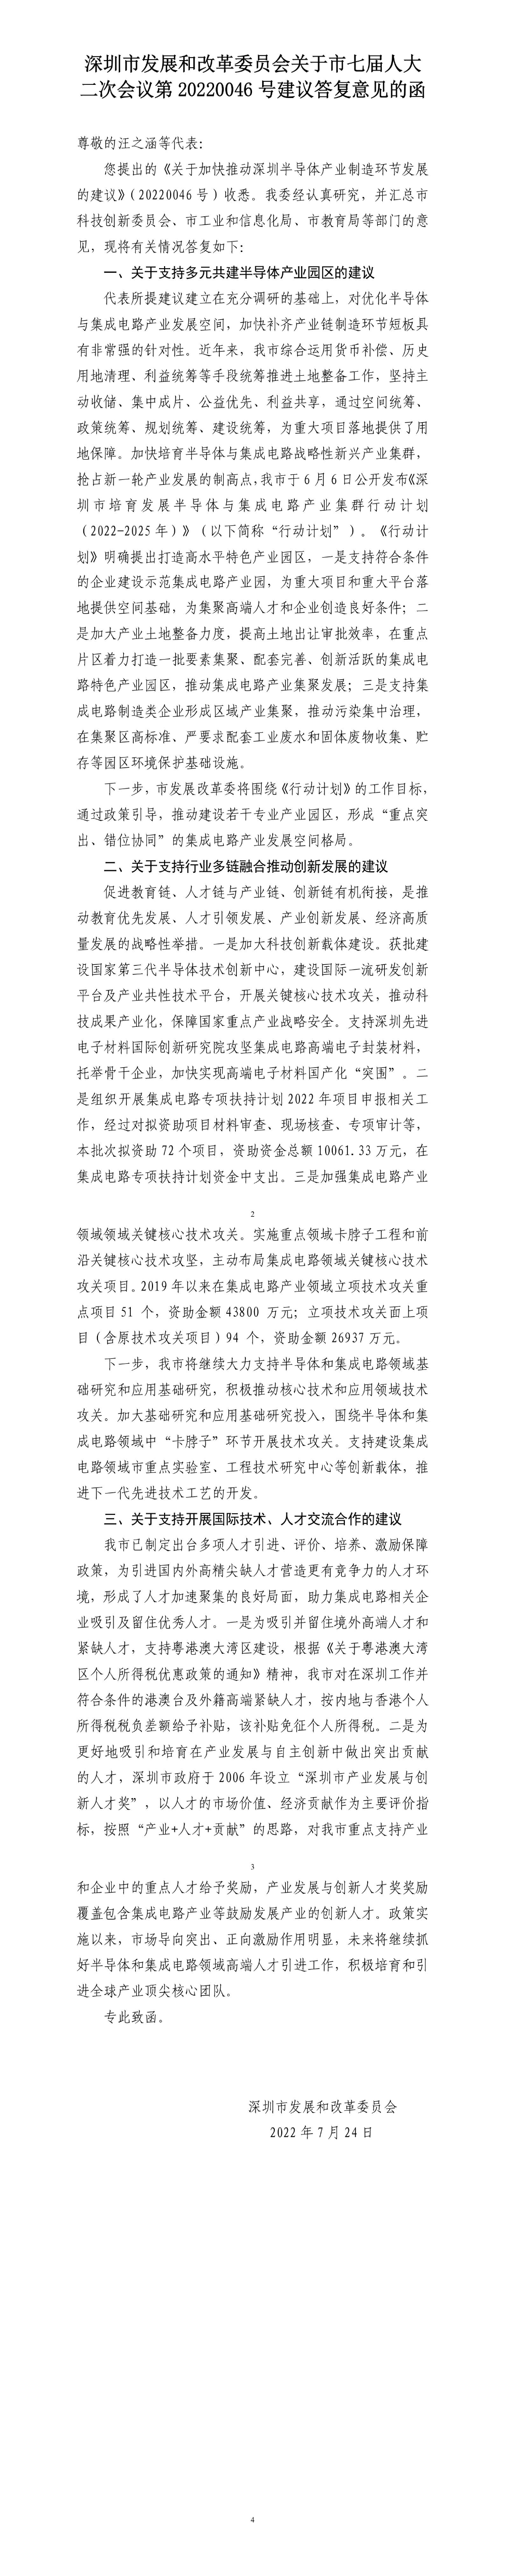 深圳市发展和改革委员会关于市七届人大二次会议第20220046号建议答复意见的函.jpg